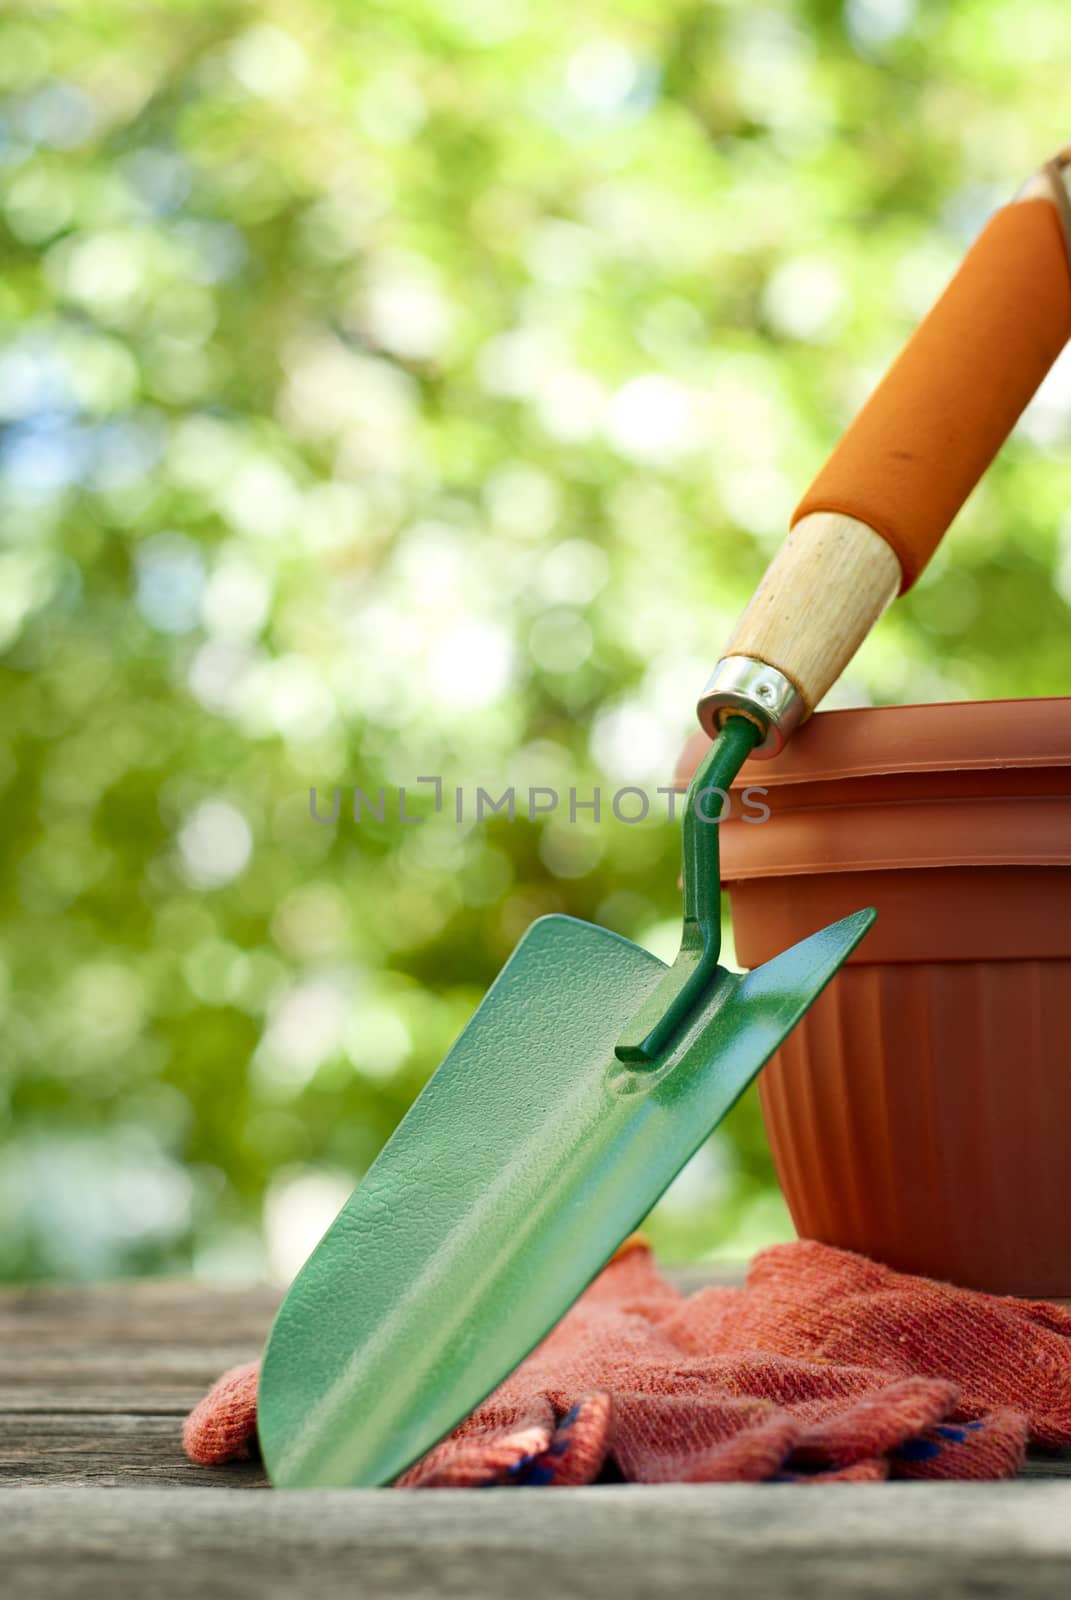 garden shovel, gloves and clay pots